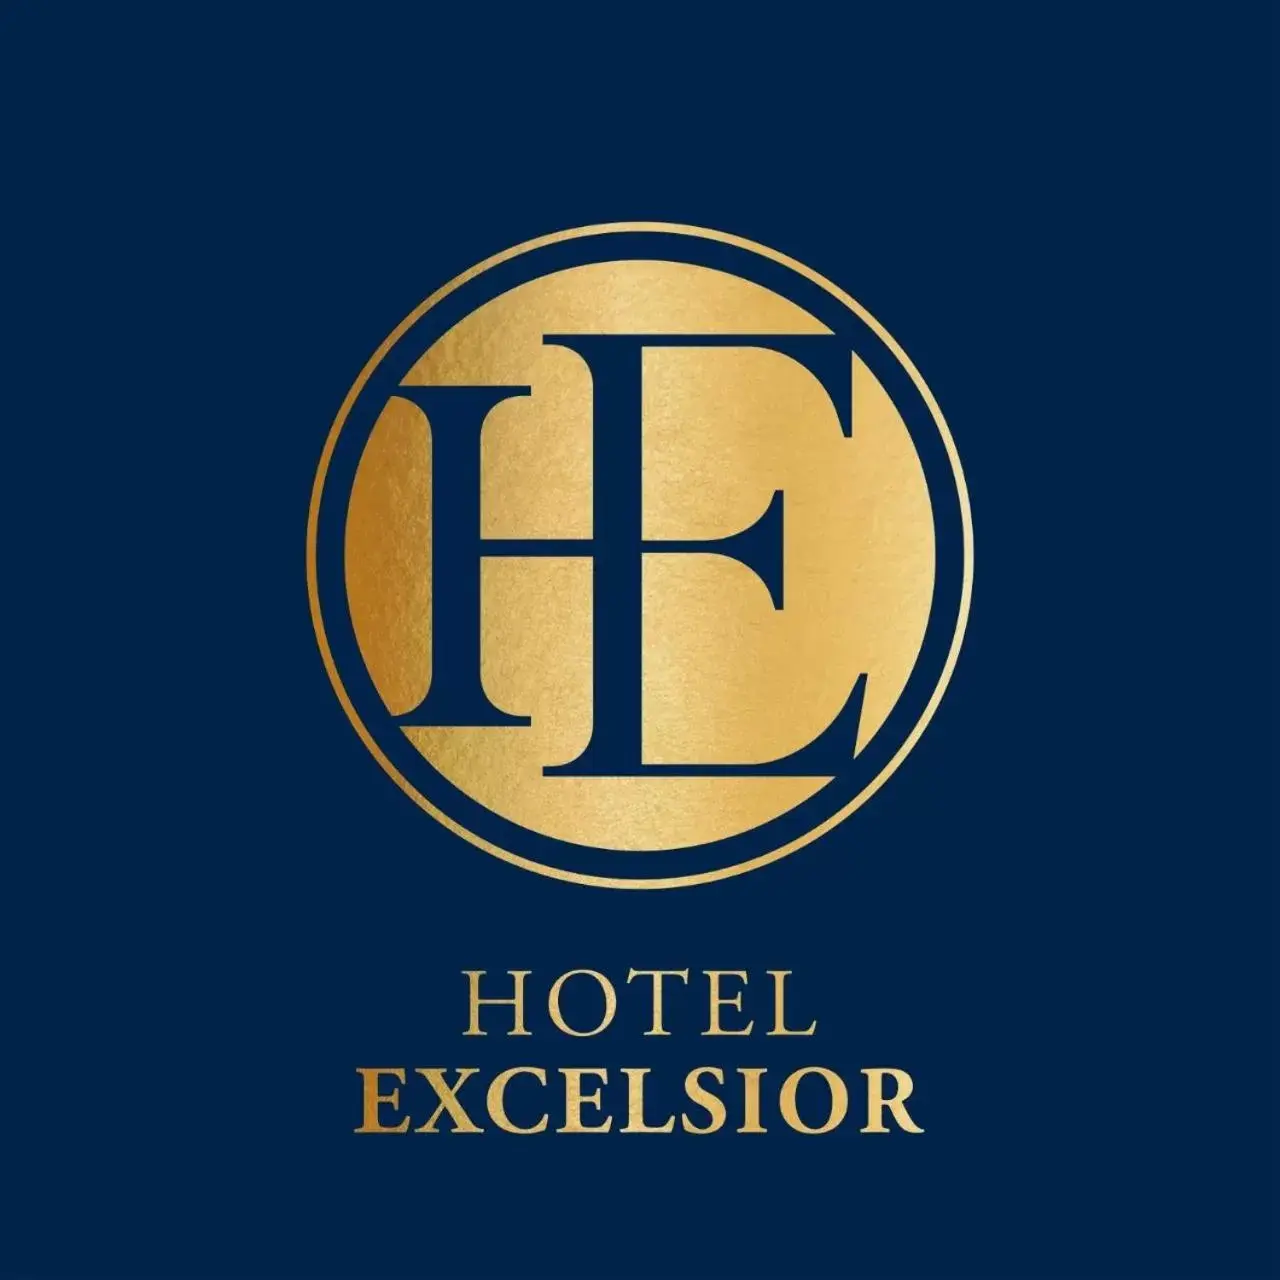 Property logo or sign in Hotel Excelsior Karachi